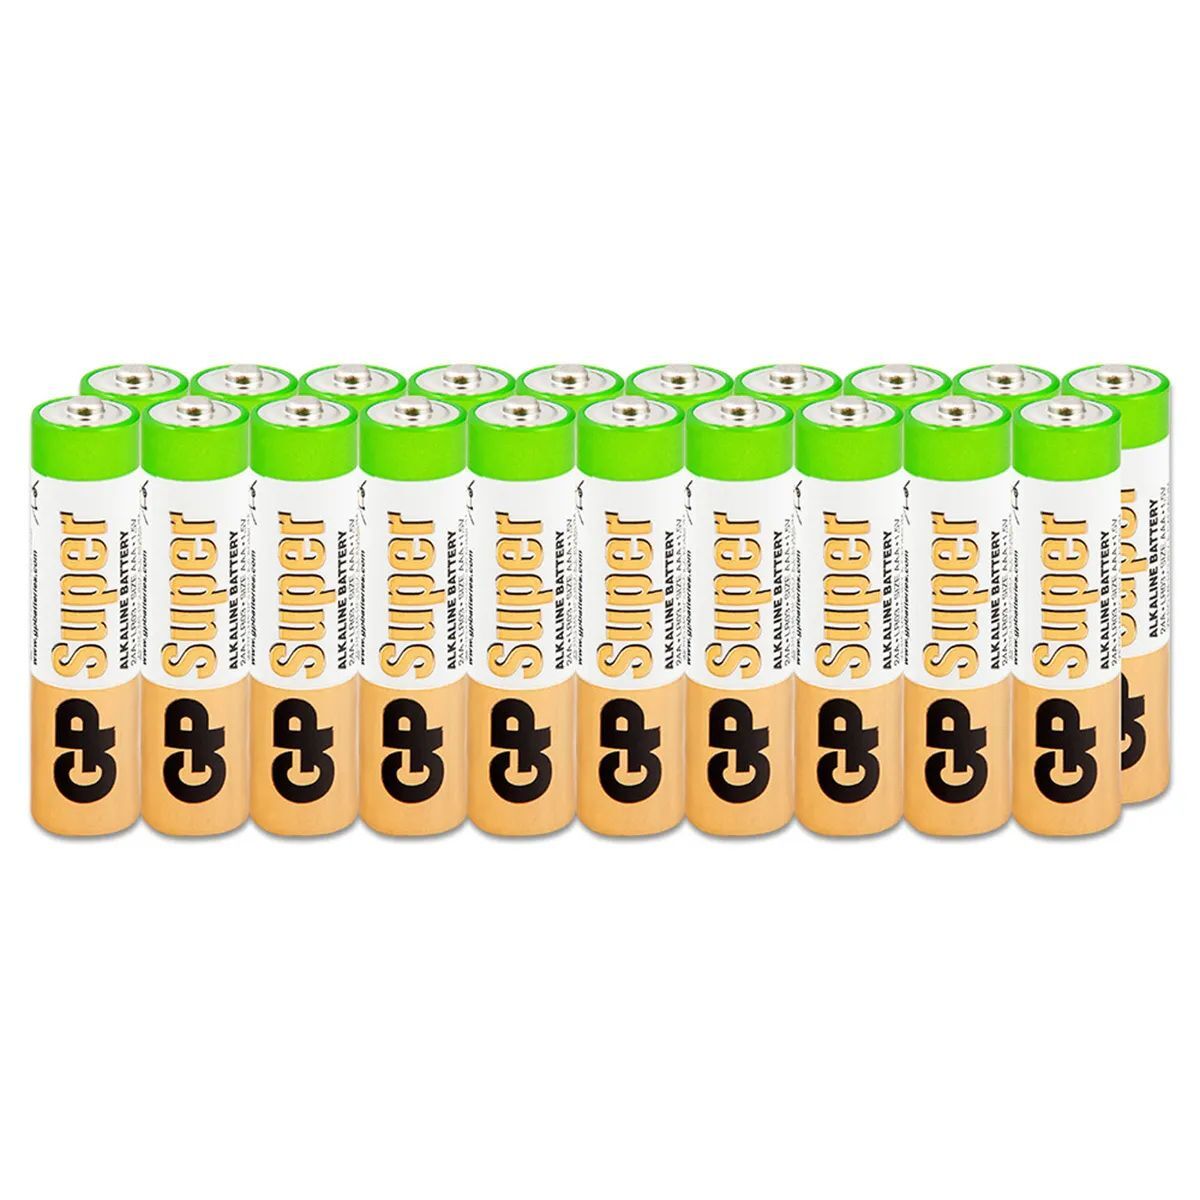 Батарейки GP Super Alkaline ААA/LR03 (мизинчиковые) упаковка 20 штук